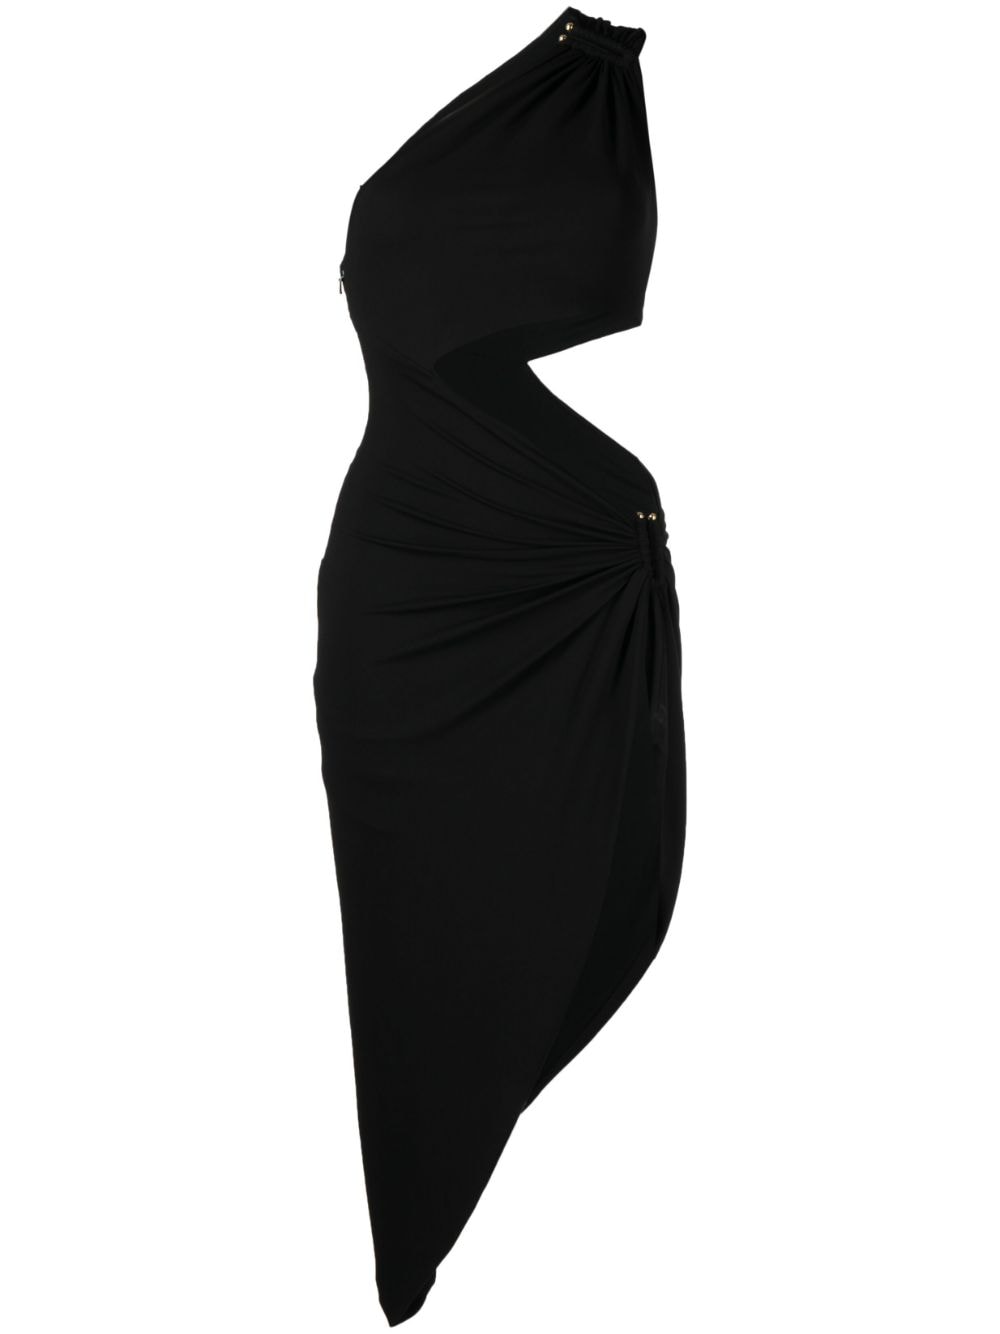 Michael Kors Collection Elliptical cut-out dress - Black